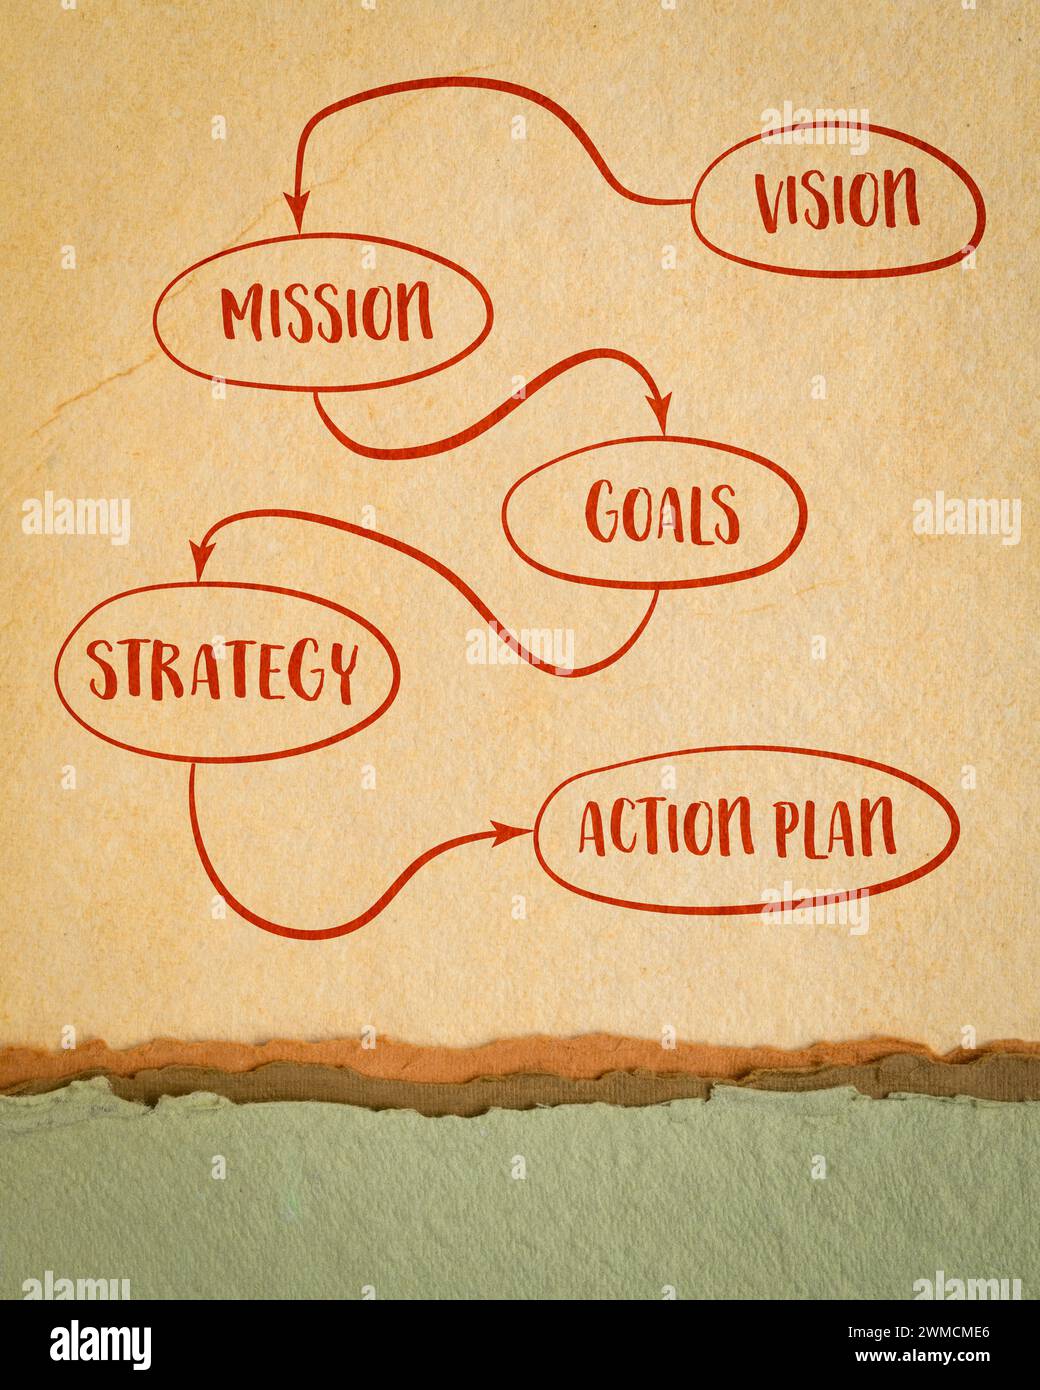 vision, mission, objectifs, stratégie et plan d'action - croquis de diagramme sur papier d'art, concept d'entreprise Banque D'Images